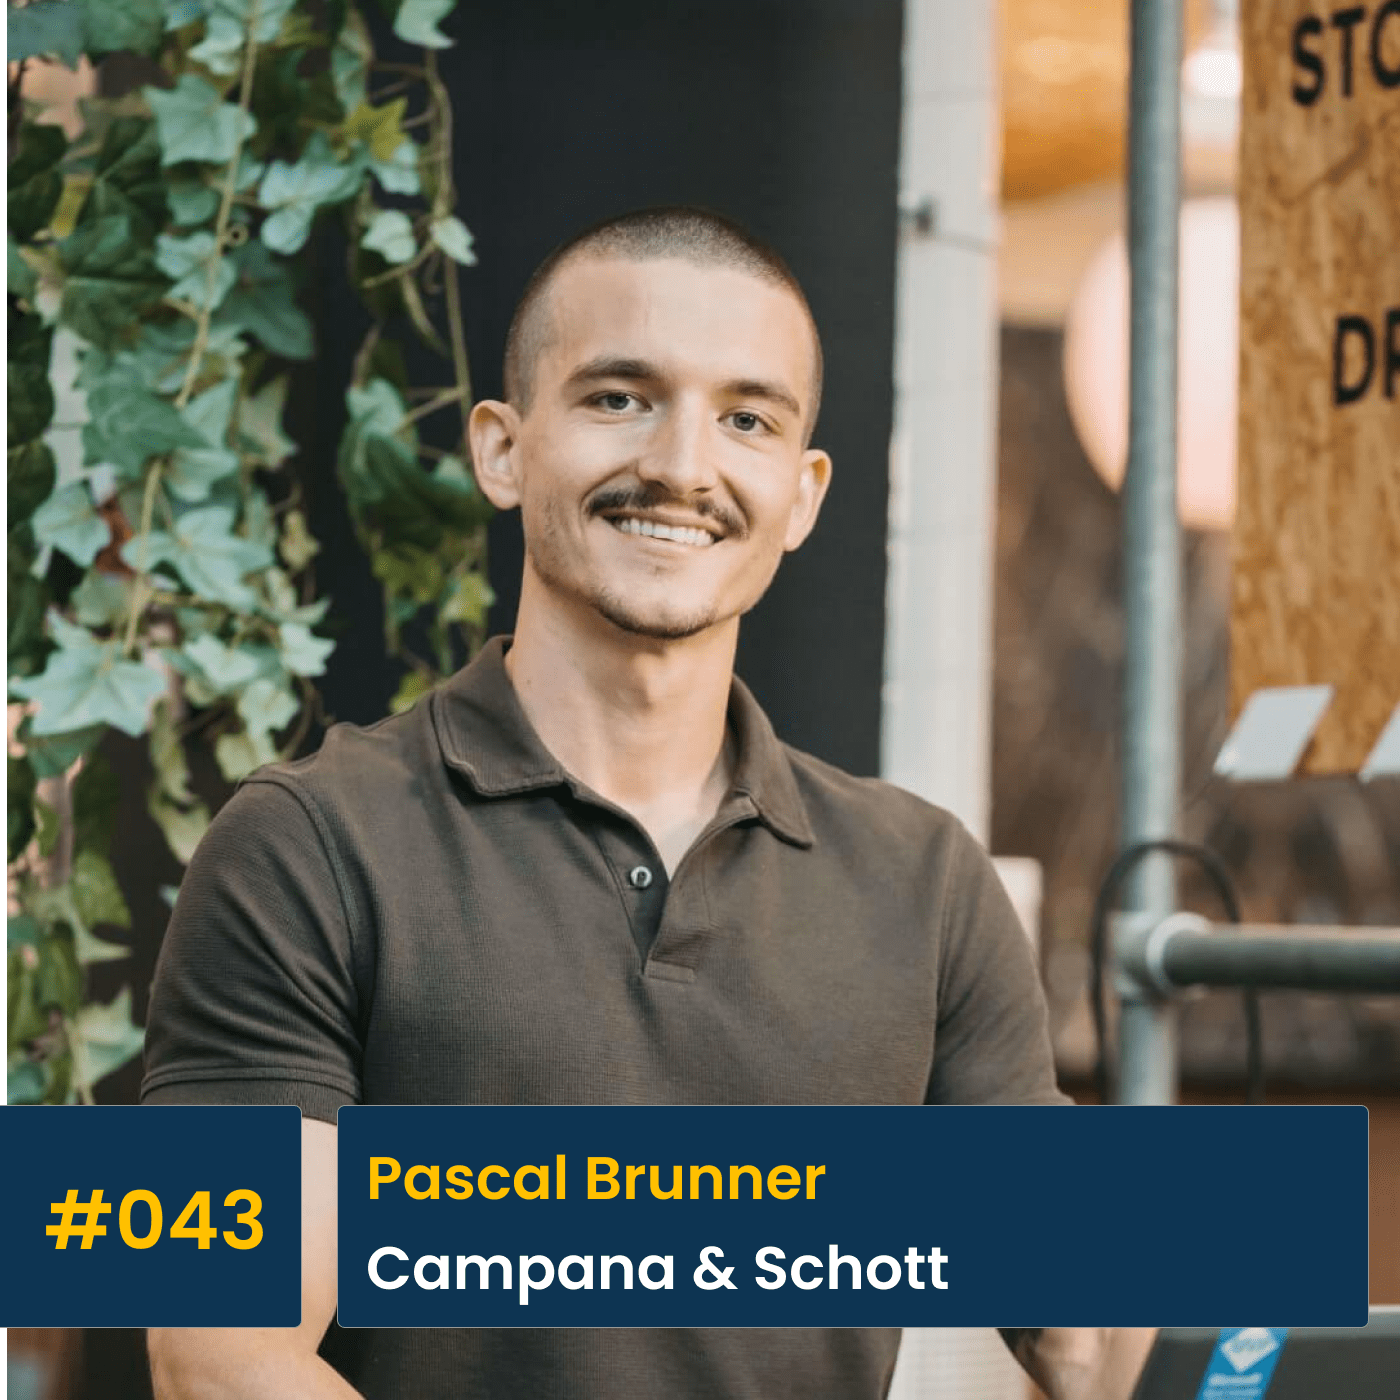 #043 Pascal Brunner, Campana & Schott